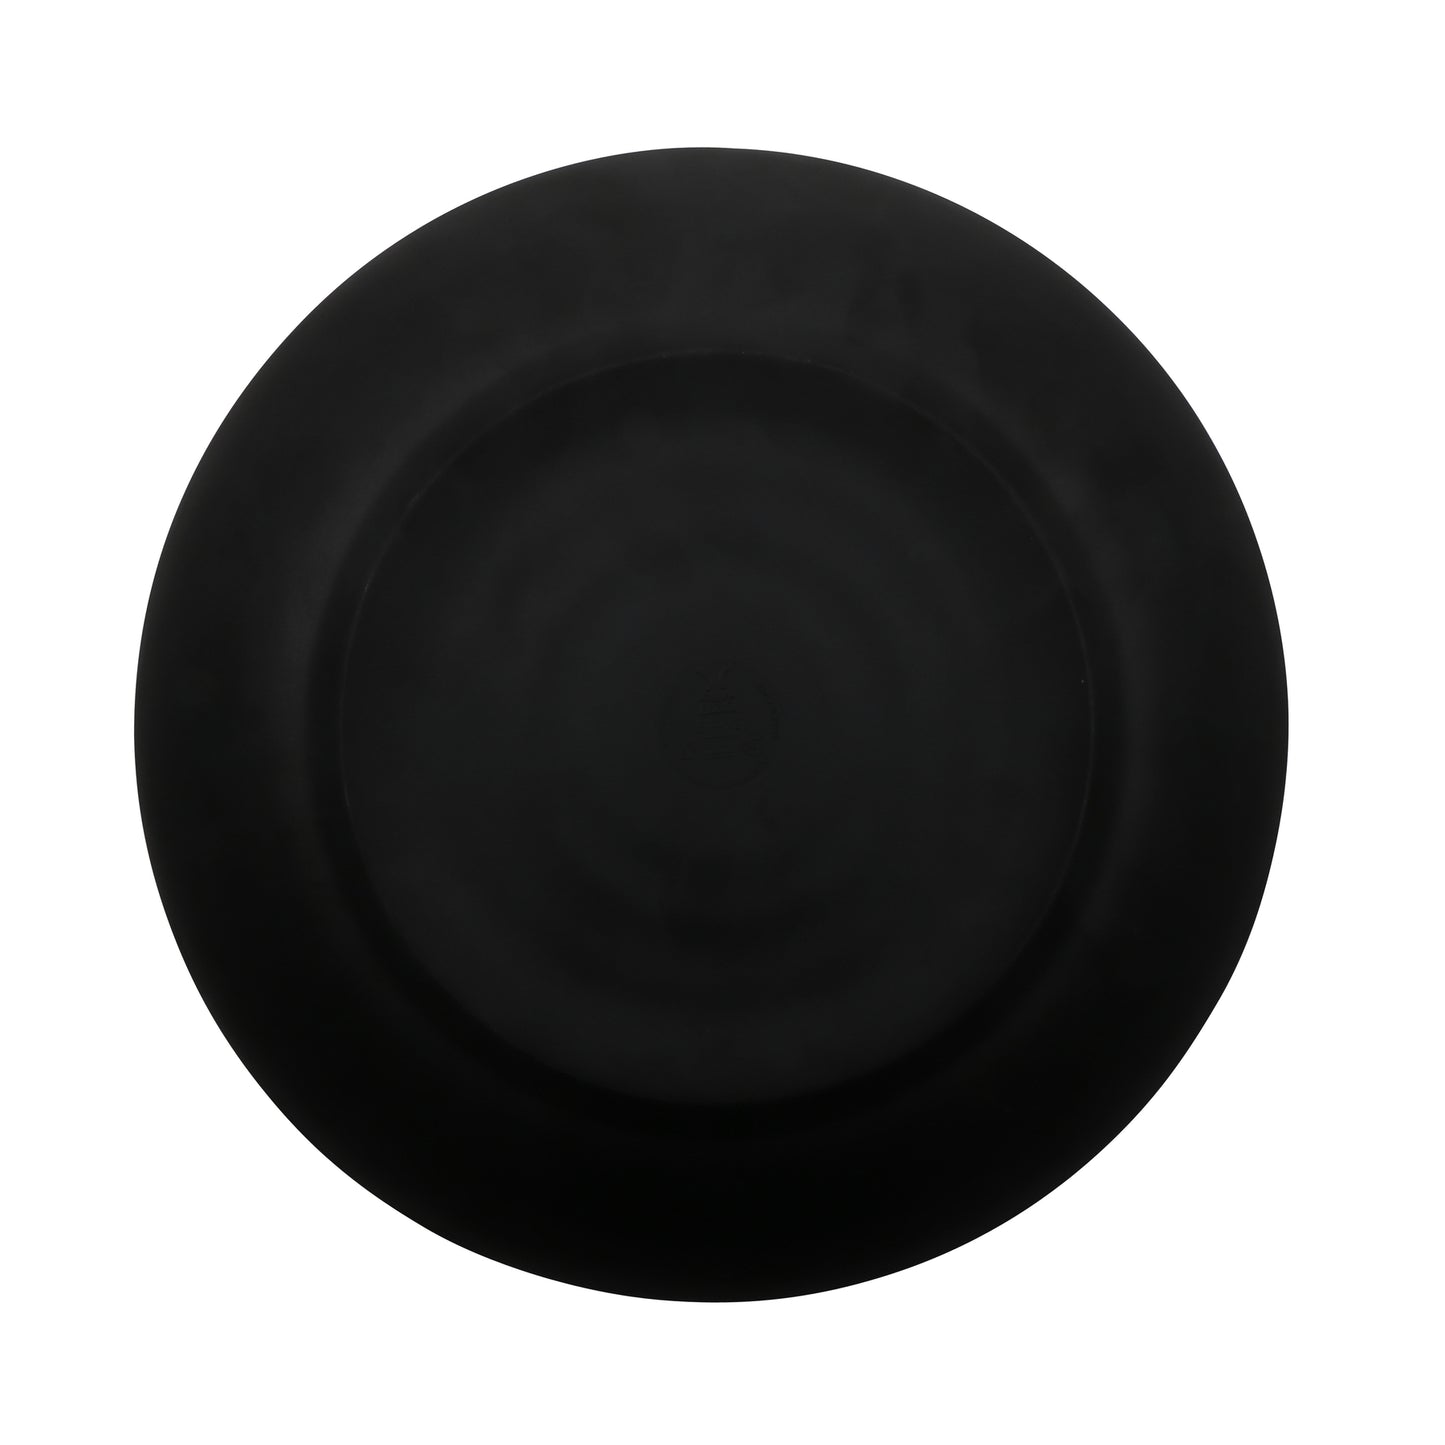 12" Melamine, Black, Round Dinner/Entree Plate, G.E.T. Nara (12 Pack)